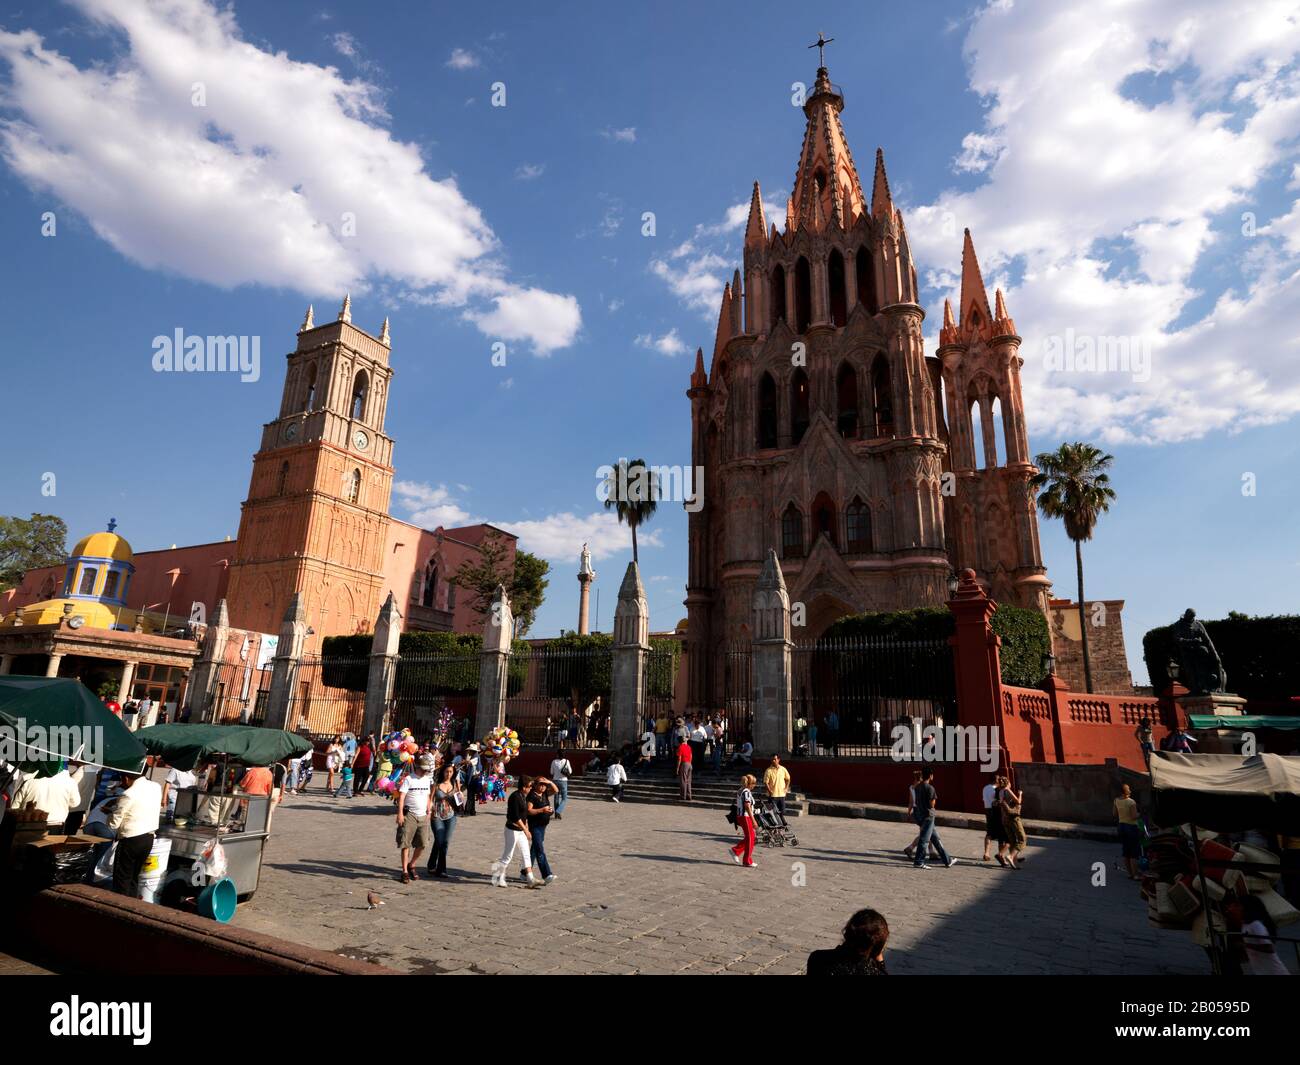 Touristes devant une église, la Parroquia de San Miguel Arcangel Eglise, El jardin, San Miguel de Allende, Guanajuato, Mexique Banque D'Images